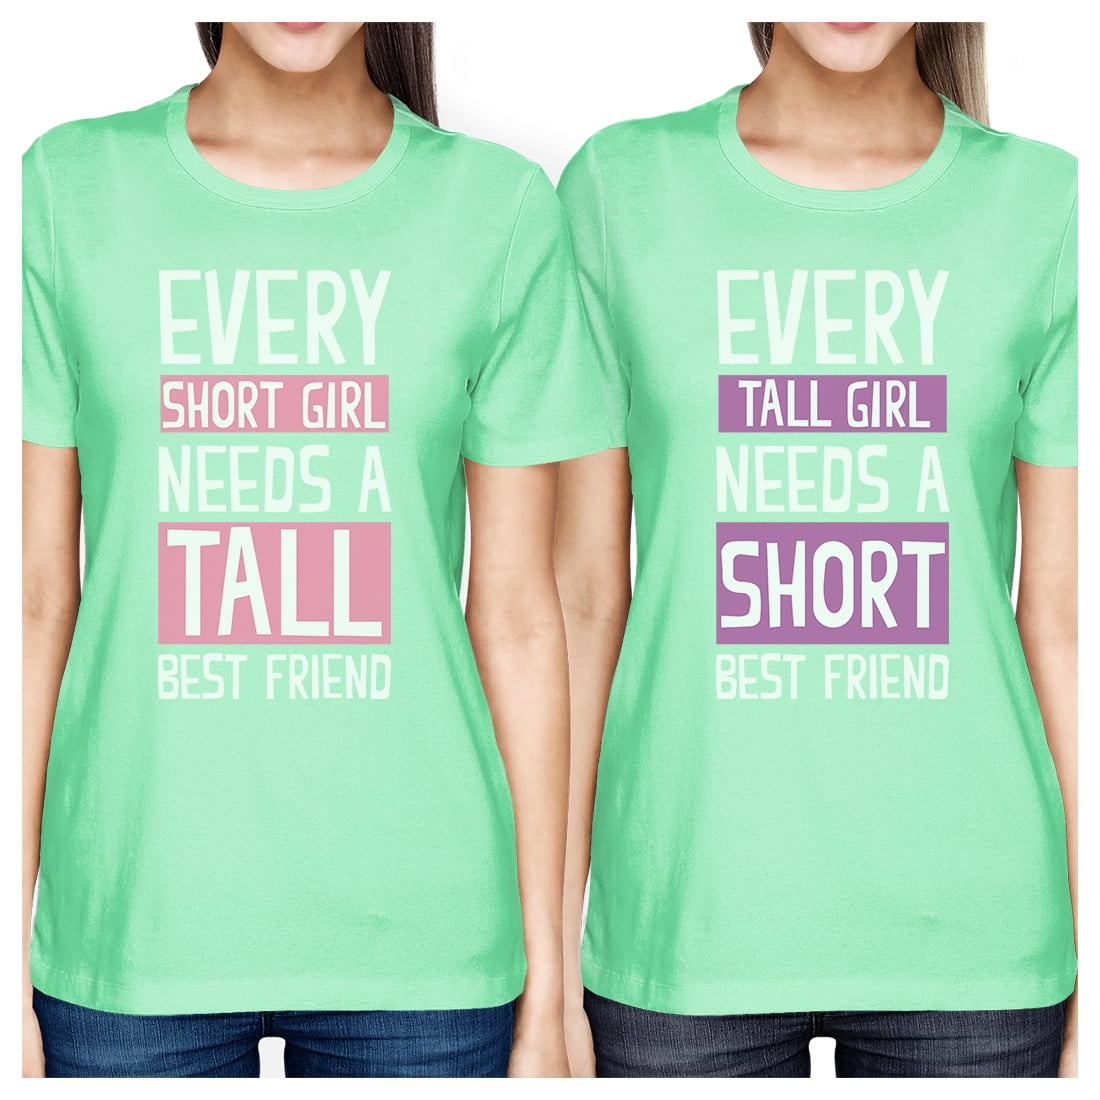 Best friend match. Friend short. Tall short friendly. Футболка girl never can first. BFF пушистые друзья.